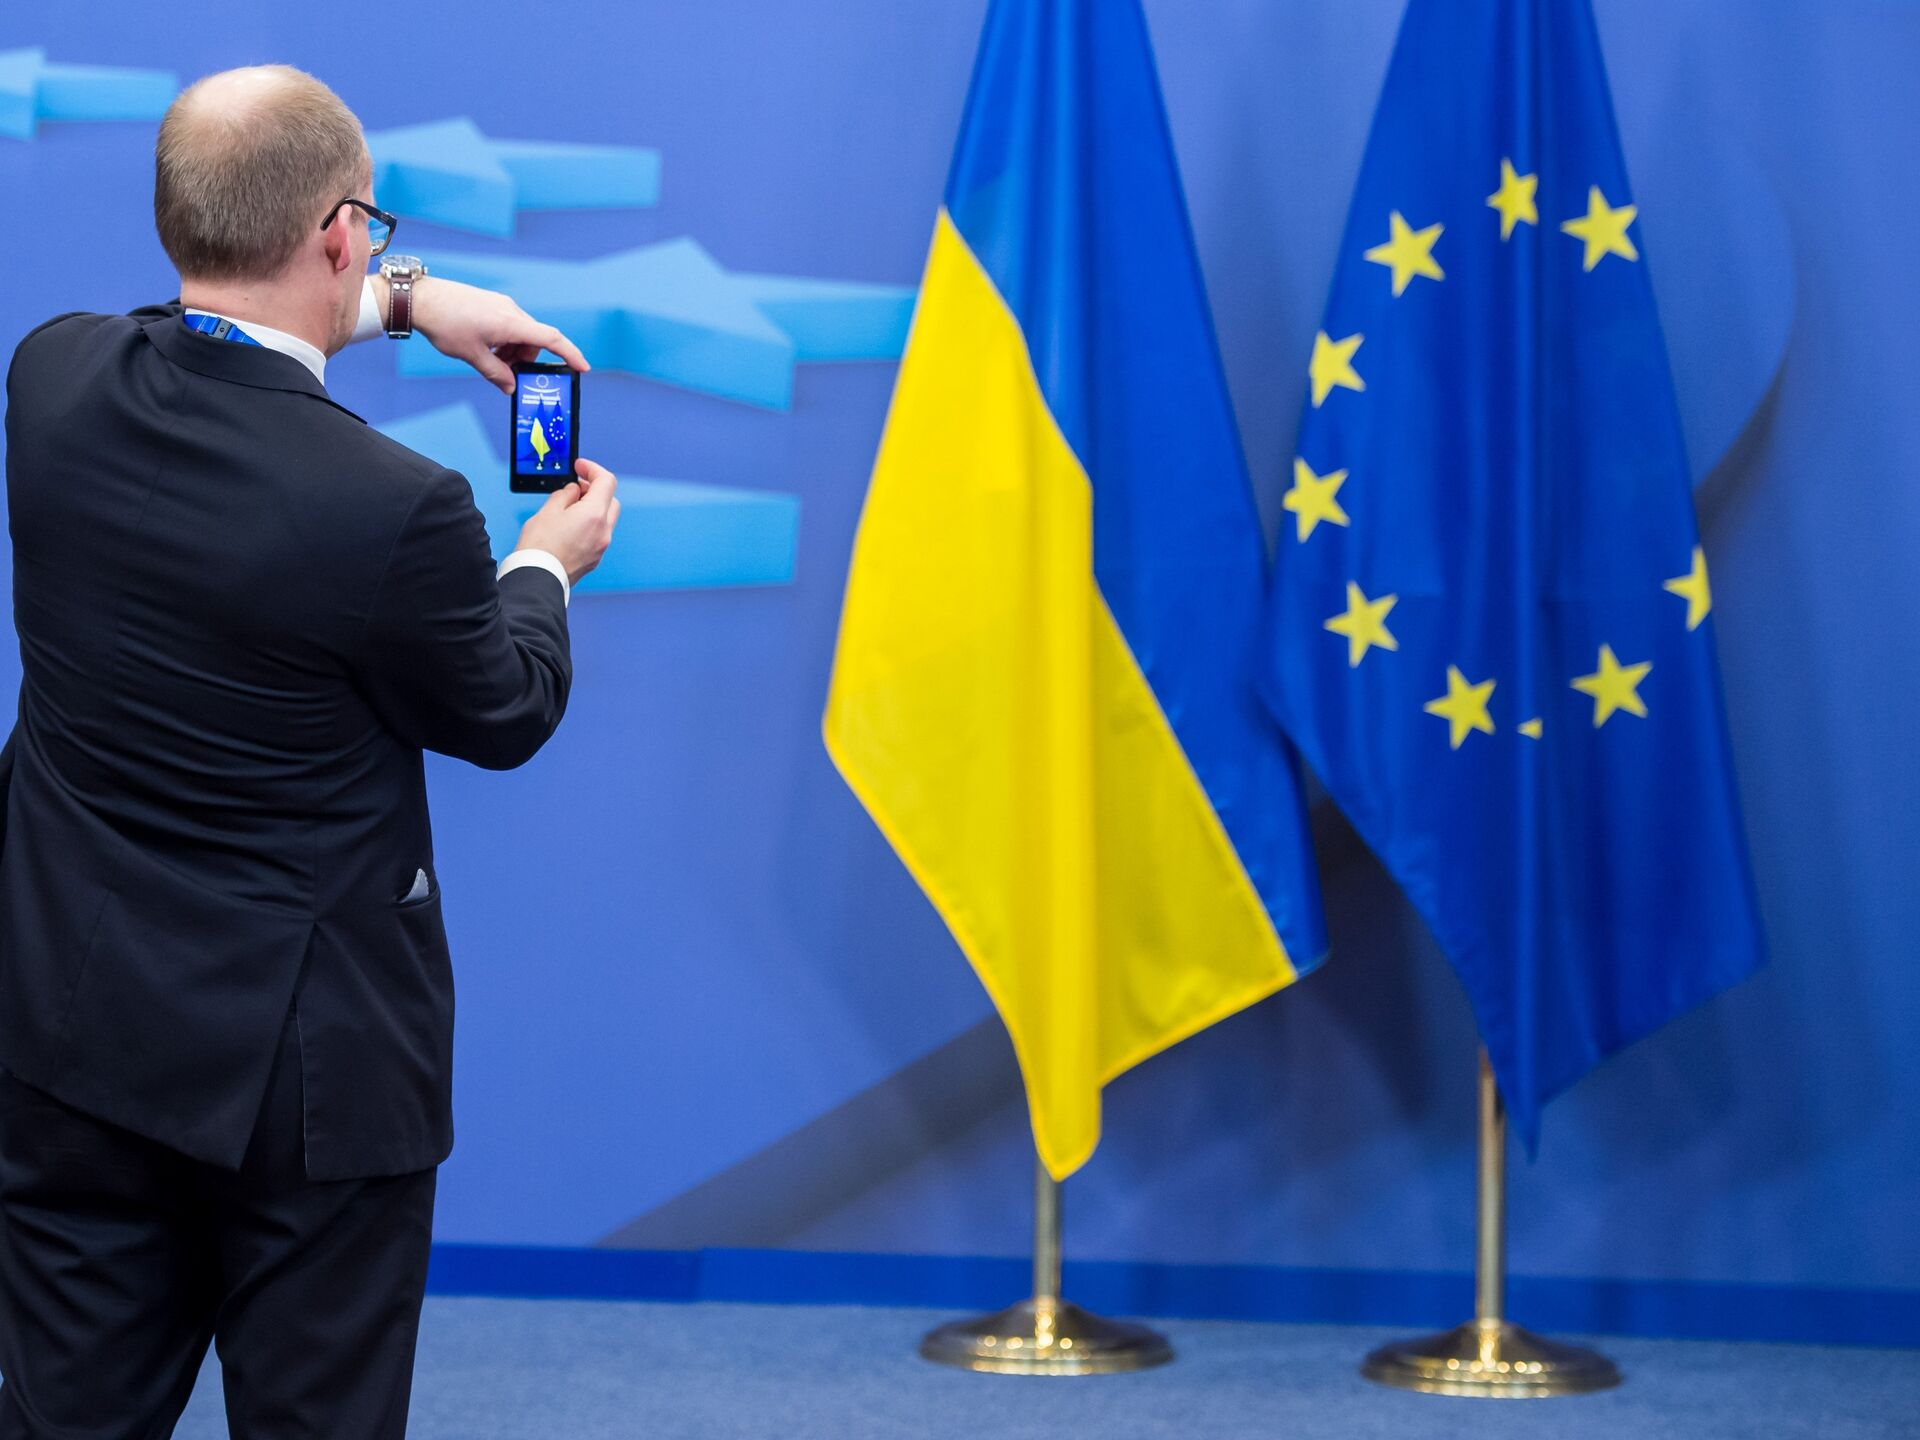 Сможет ли Украина  вступить в Евросоюз без очереди?